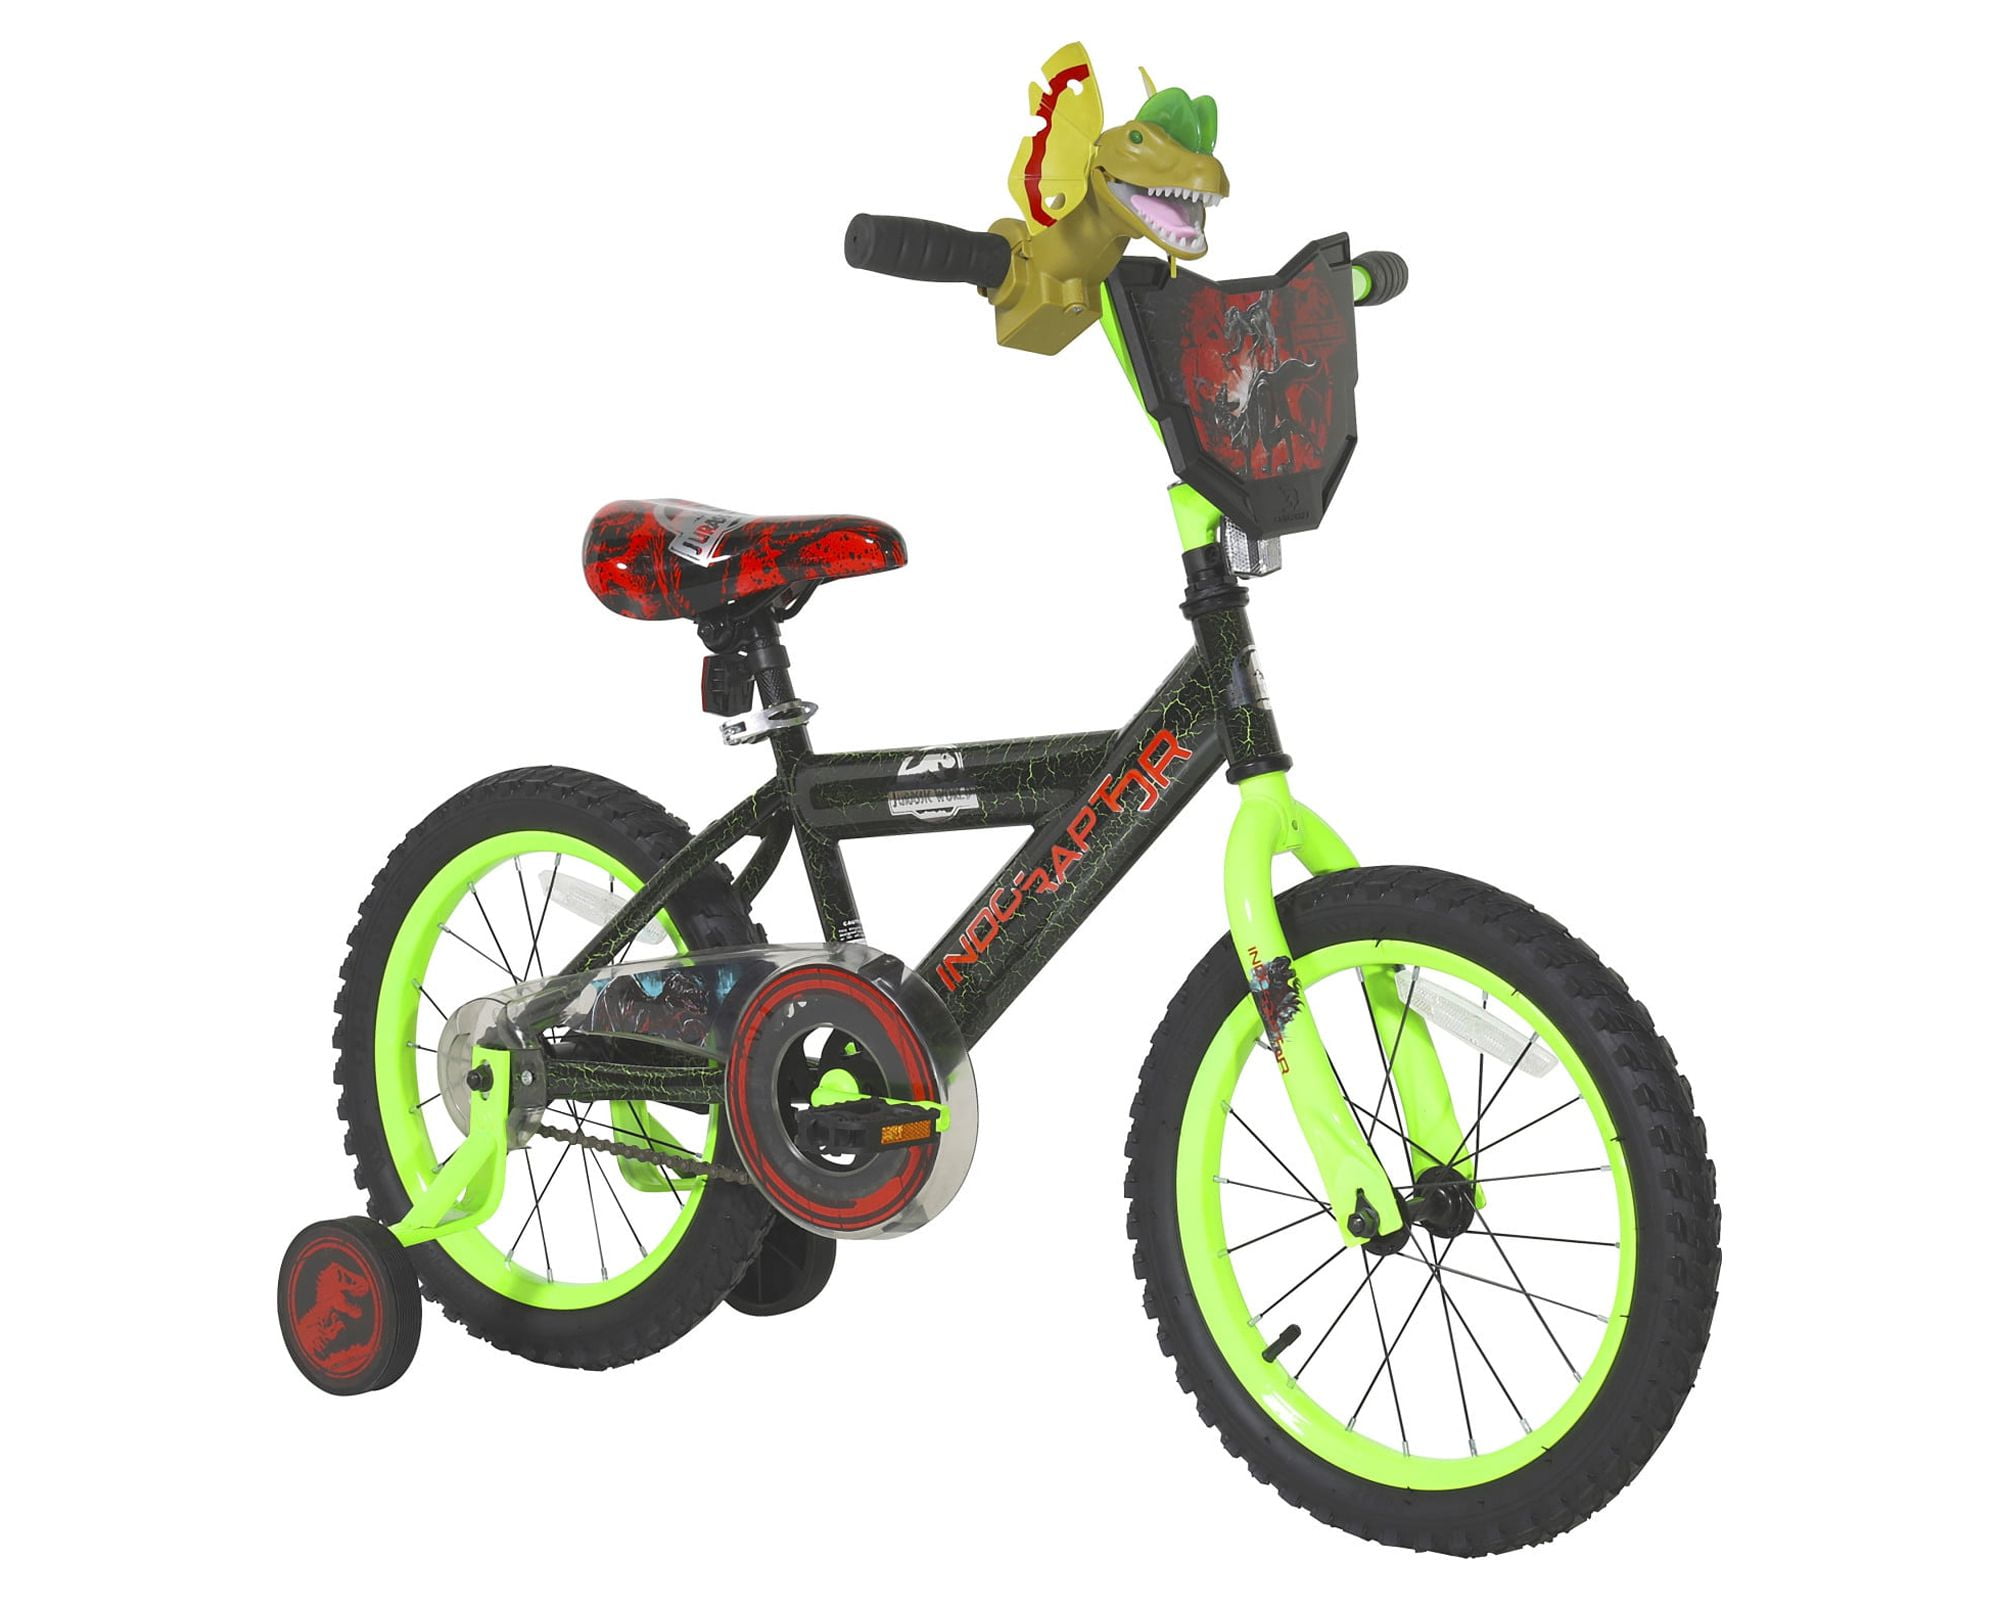 Dinobikes Dino Bikes 164 R-PSS – Bicicleta para niña de 6 a 8 años, 16  Pulgadas